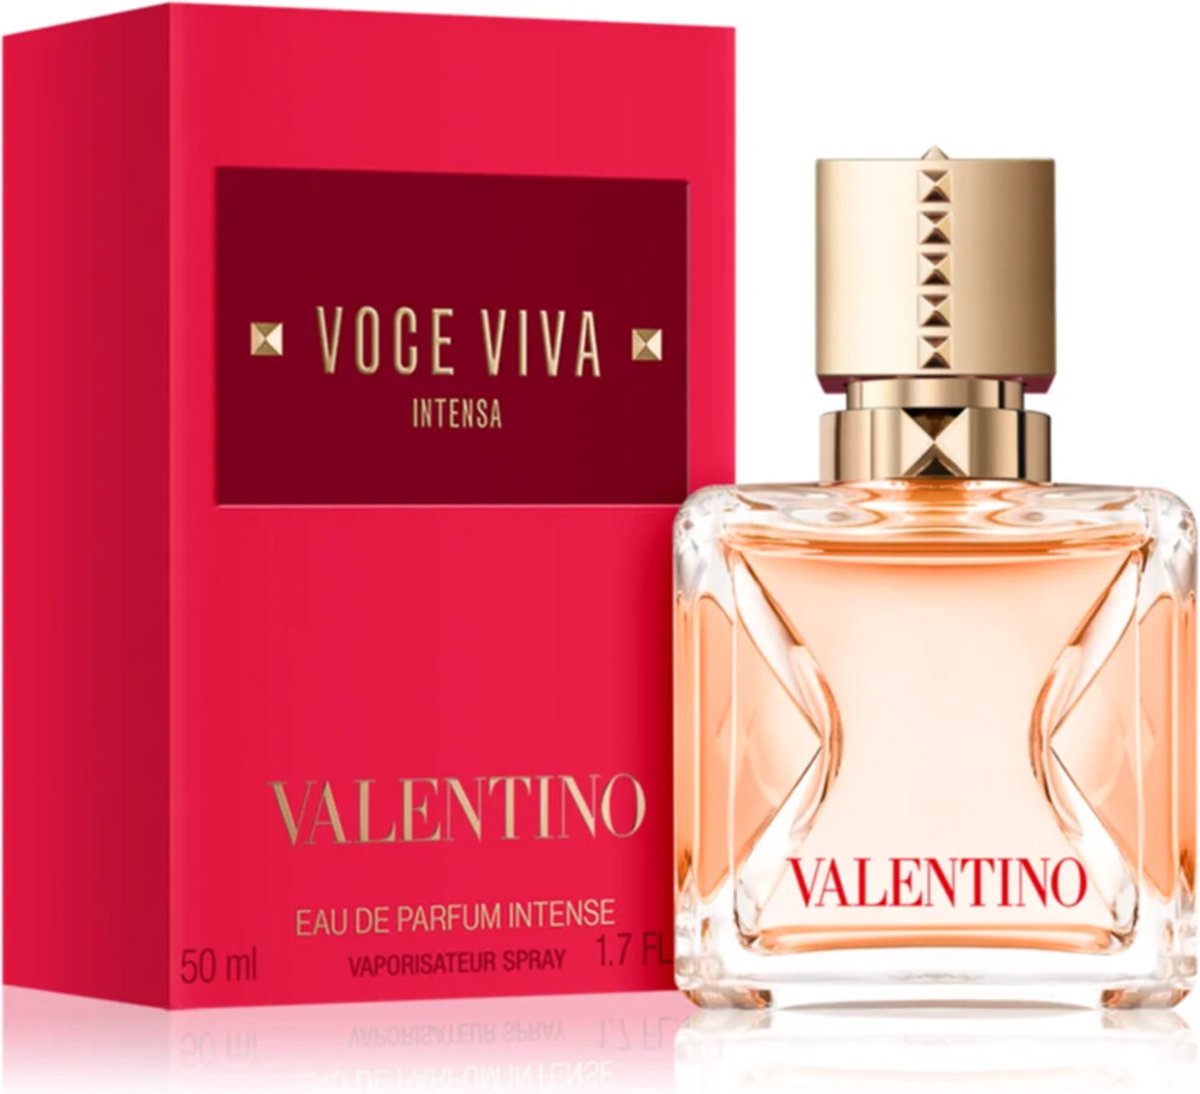 Valentino Voce Viva Intensa - 50 ml - eau de parfum spray - damesparfum